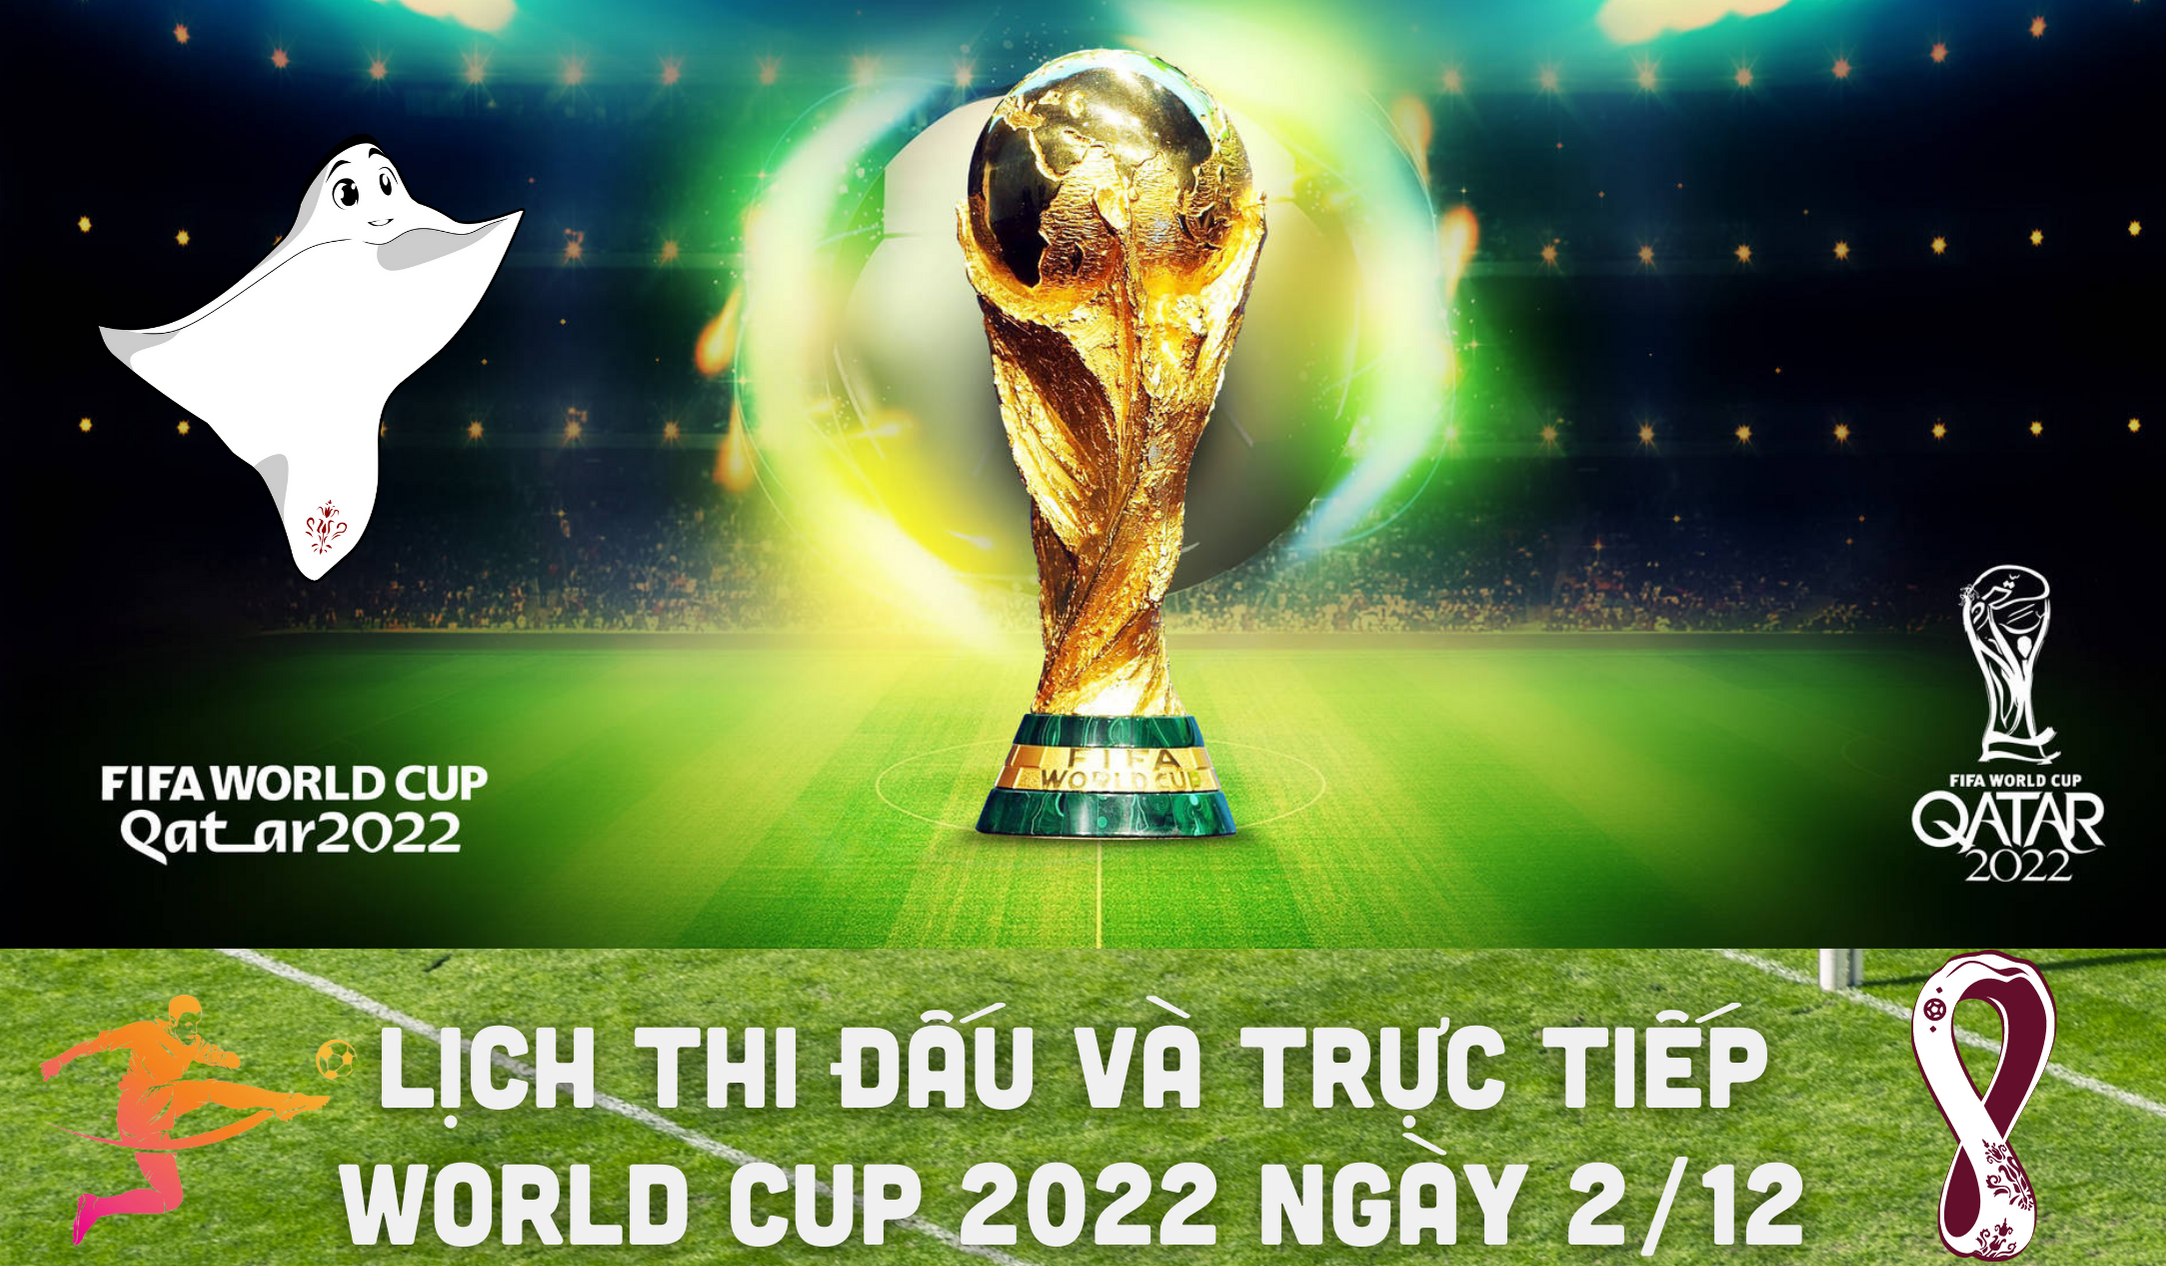 Lịch thi đấu và trực tiếp World Cup 2022 ngày 2/12